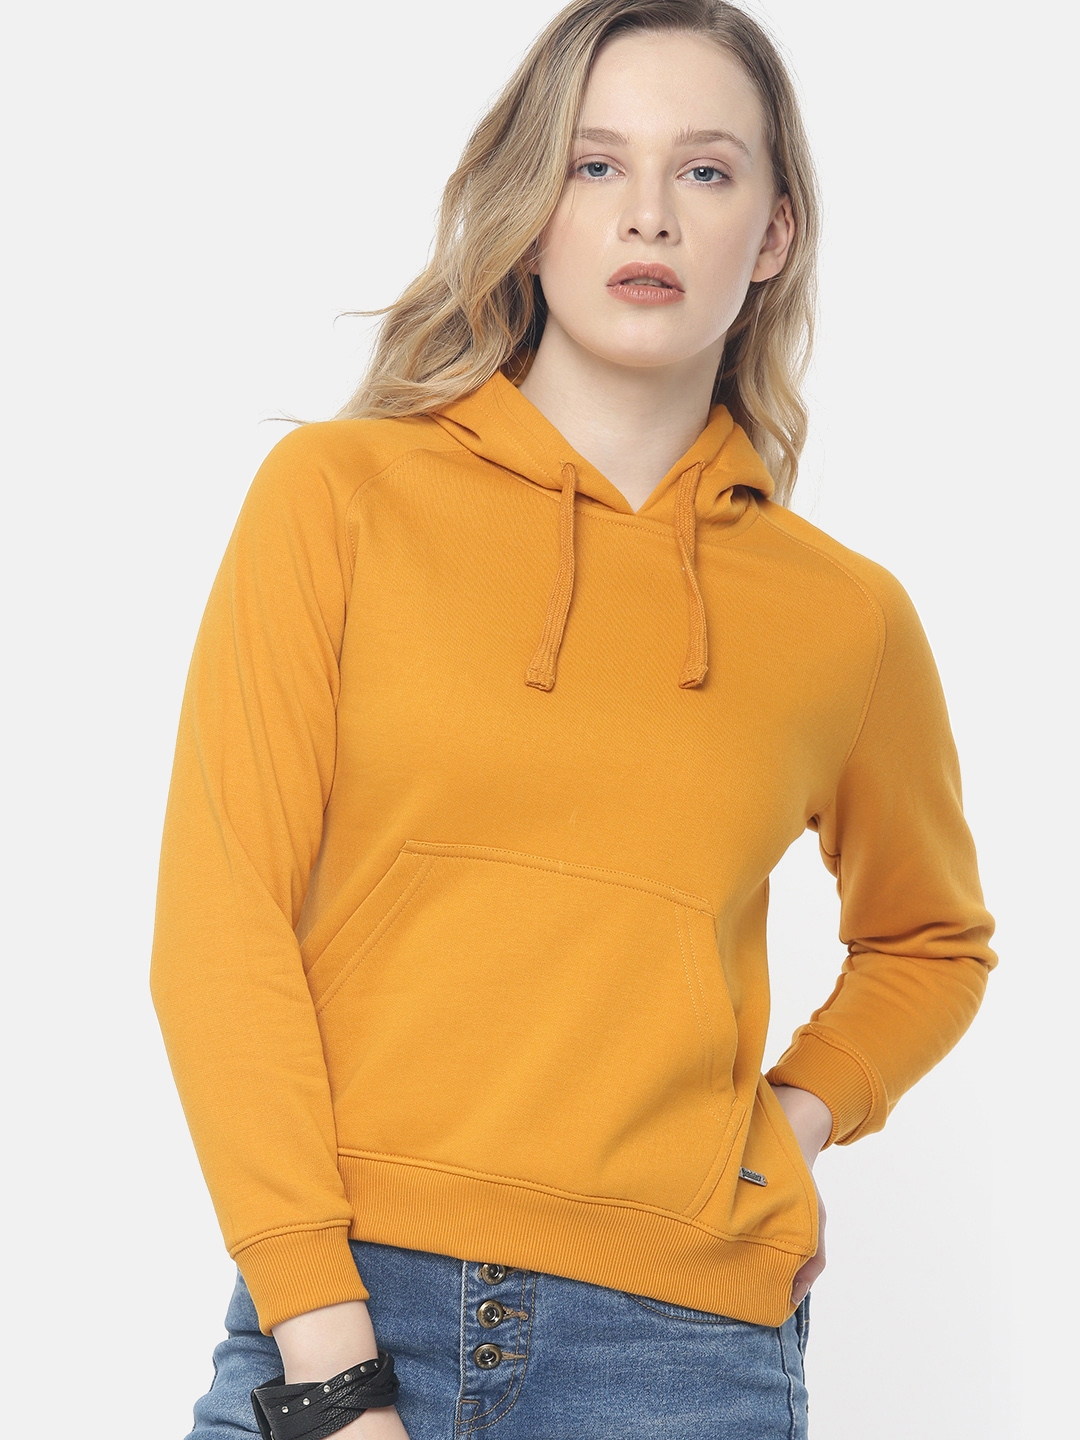 Buy The Roadster Lifestyle Co Women Mustard Yellow Solid Hooded Sweatshirt - Sweatshirts for 